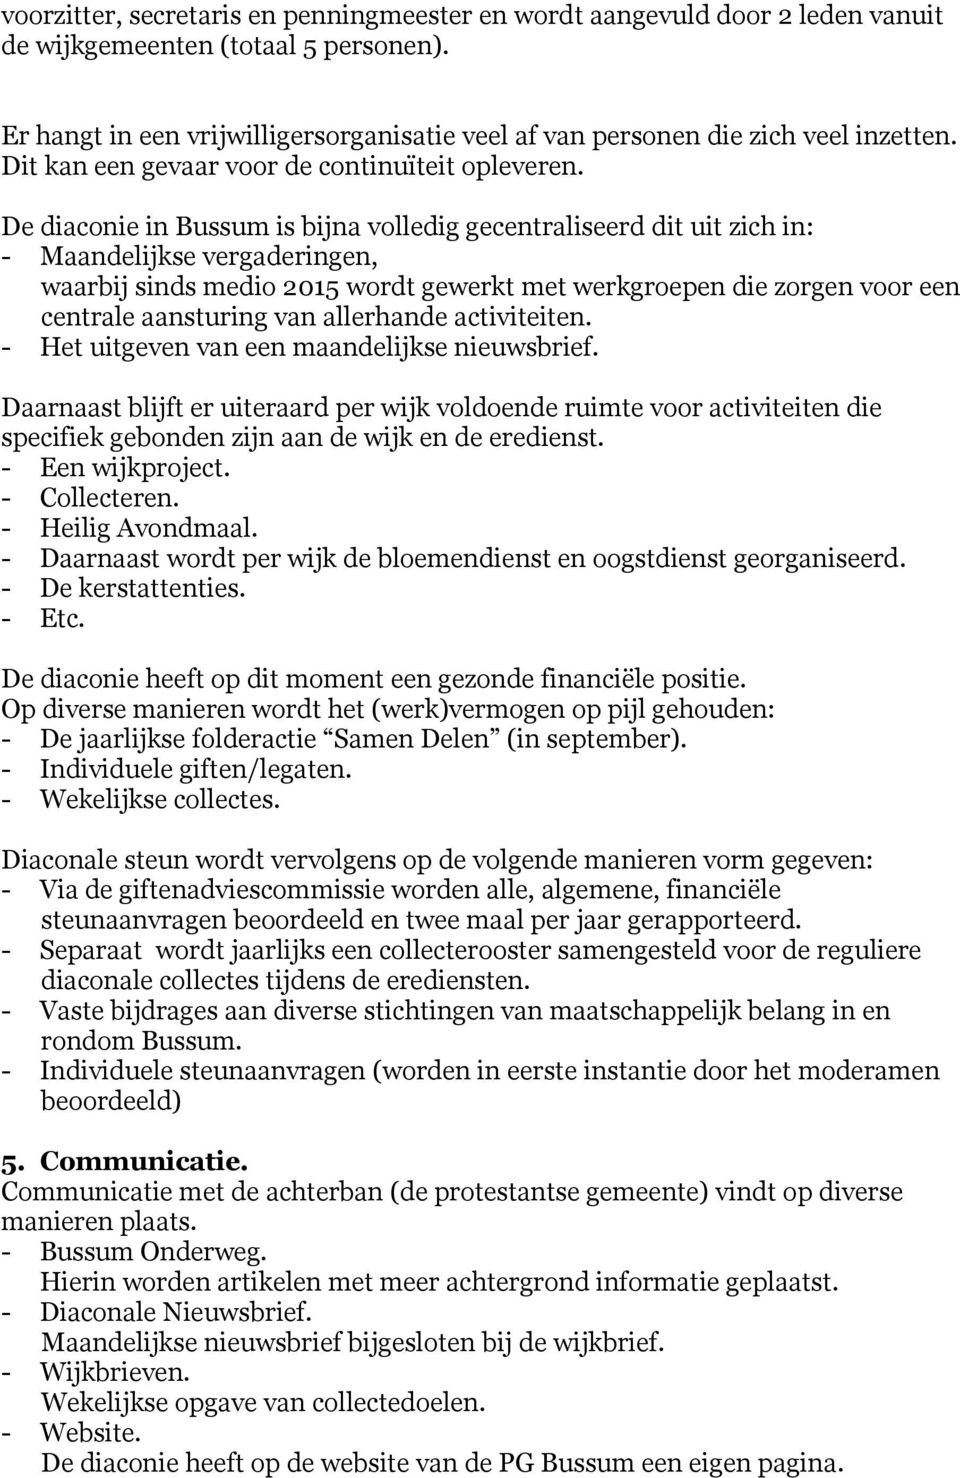 De diaconie in Bussum is bijna volledig gecentraliseerd dit uit zich in: - Maandelijkse vergaderingen, waarbij sinds medio 2015 wordt gewerkt met werkgroepen die zorgen voor een centrale aansturing